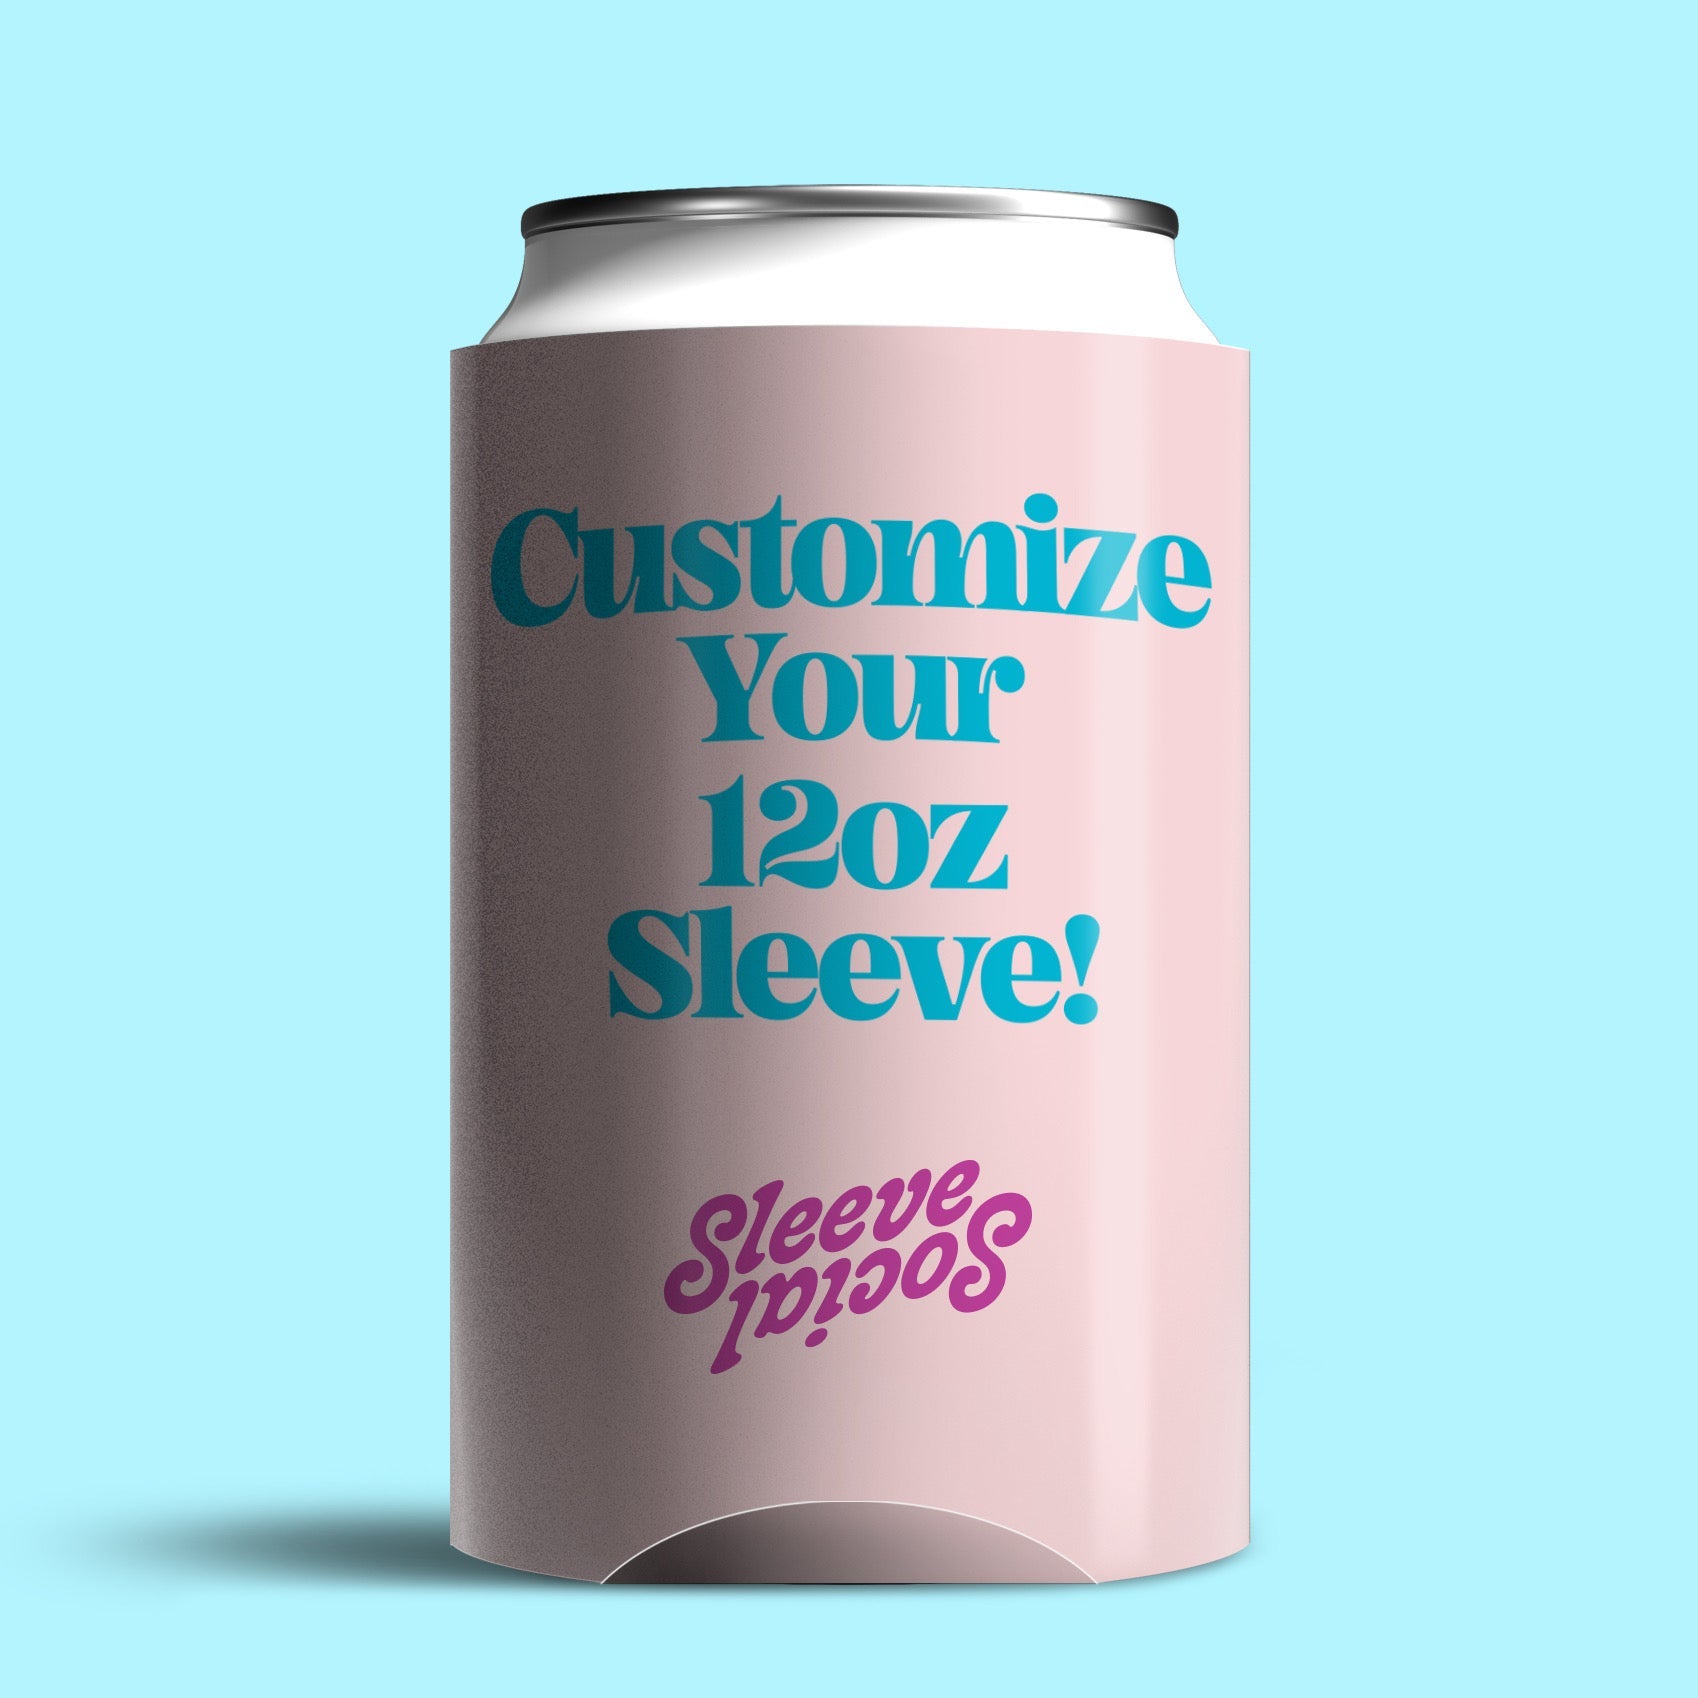 Customize Your 12oz Social Sleeve!